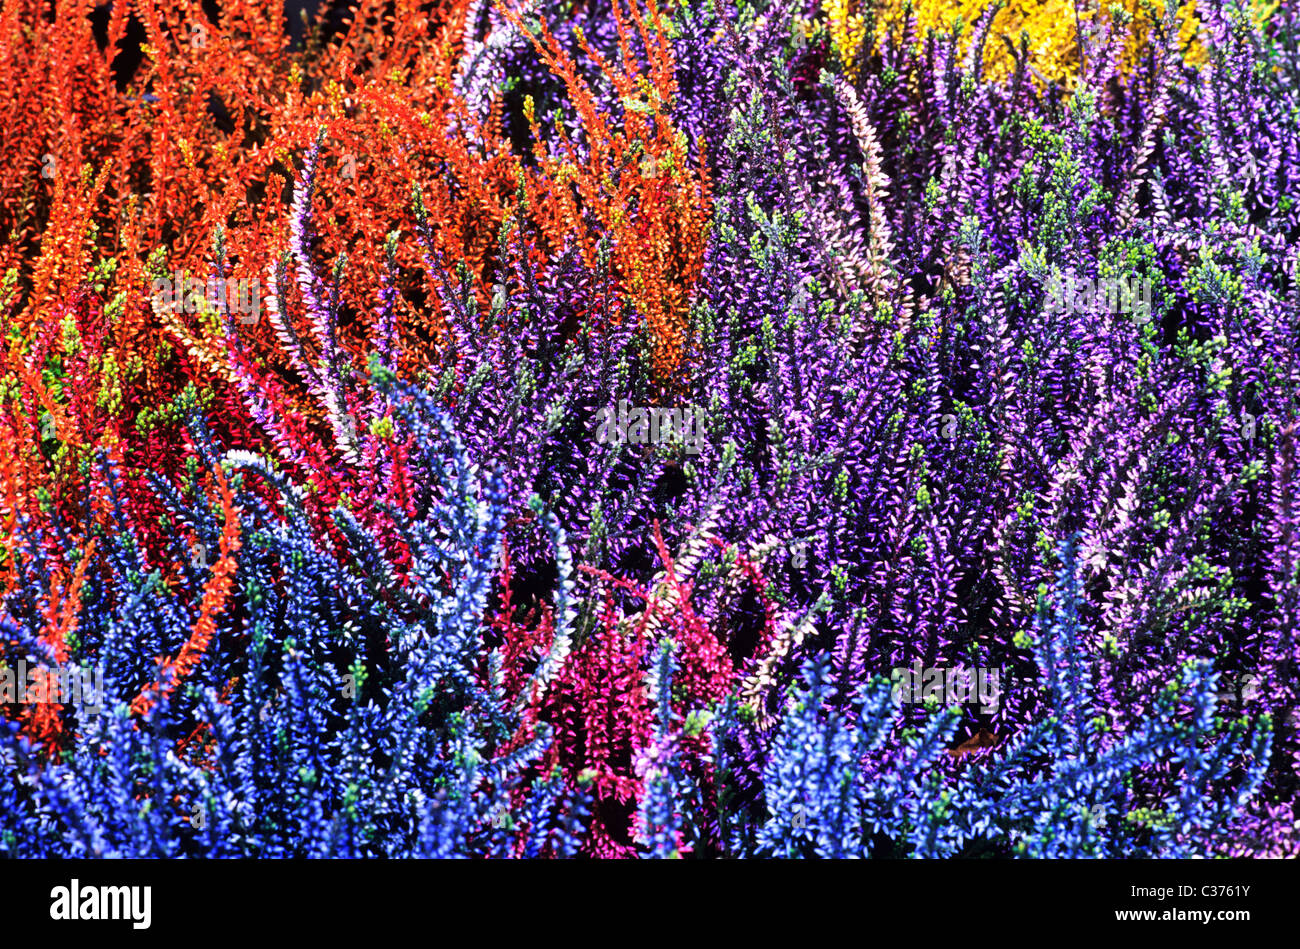 Bruyères. Automne, hiver calluna floraison fleur fleurs jardin plantes bruyère Erica coloré Couleurs mélangées Banque D'Images